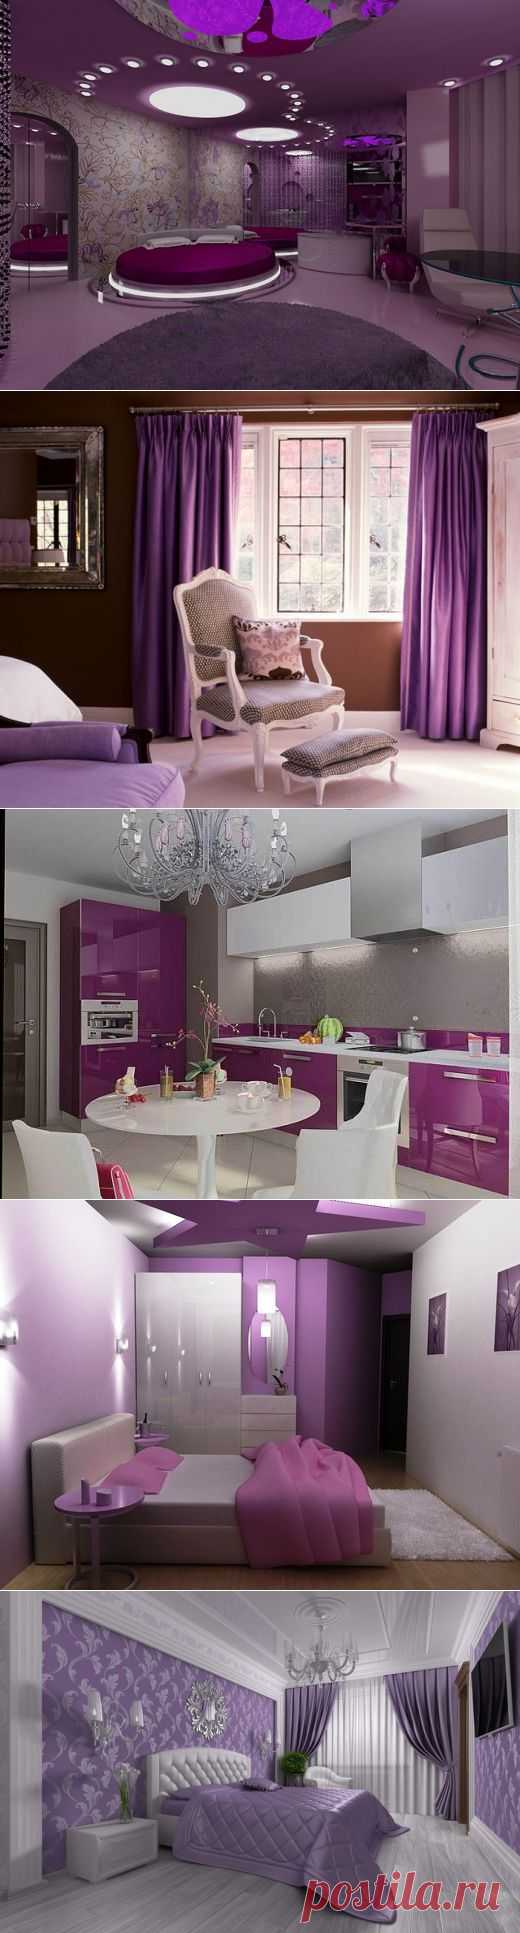 Комната в серебристо-фиолетовых тонах